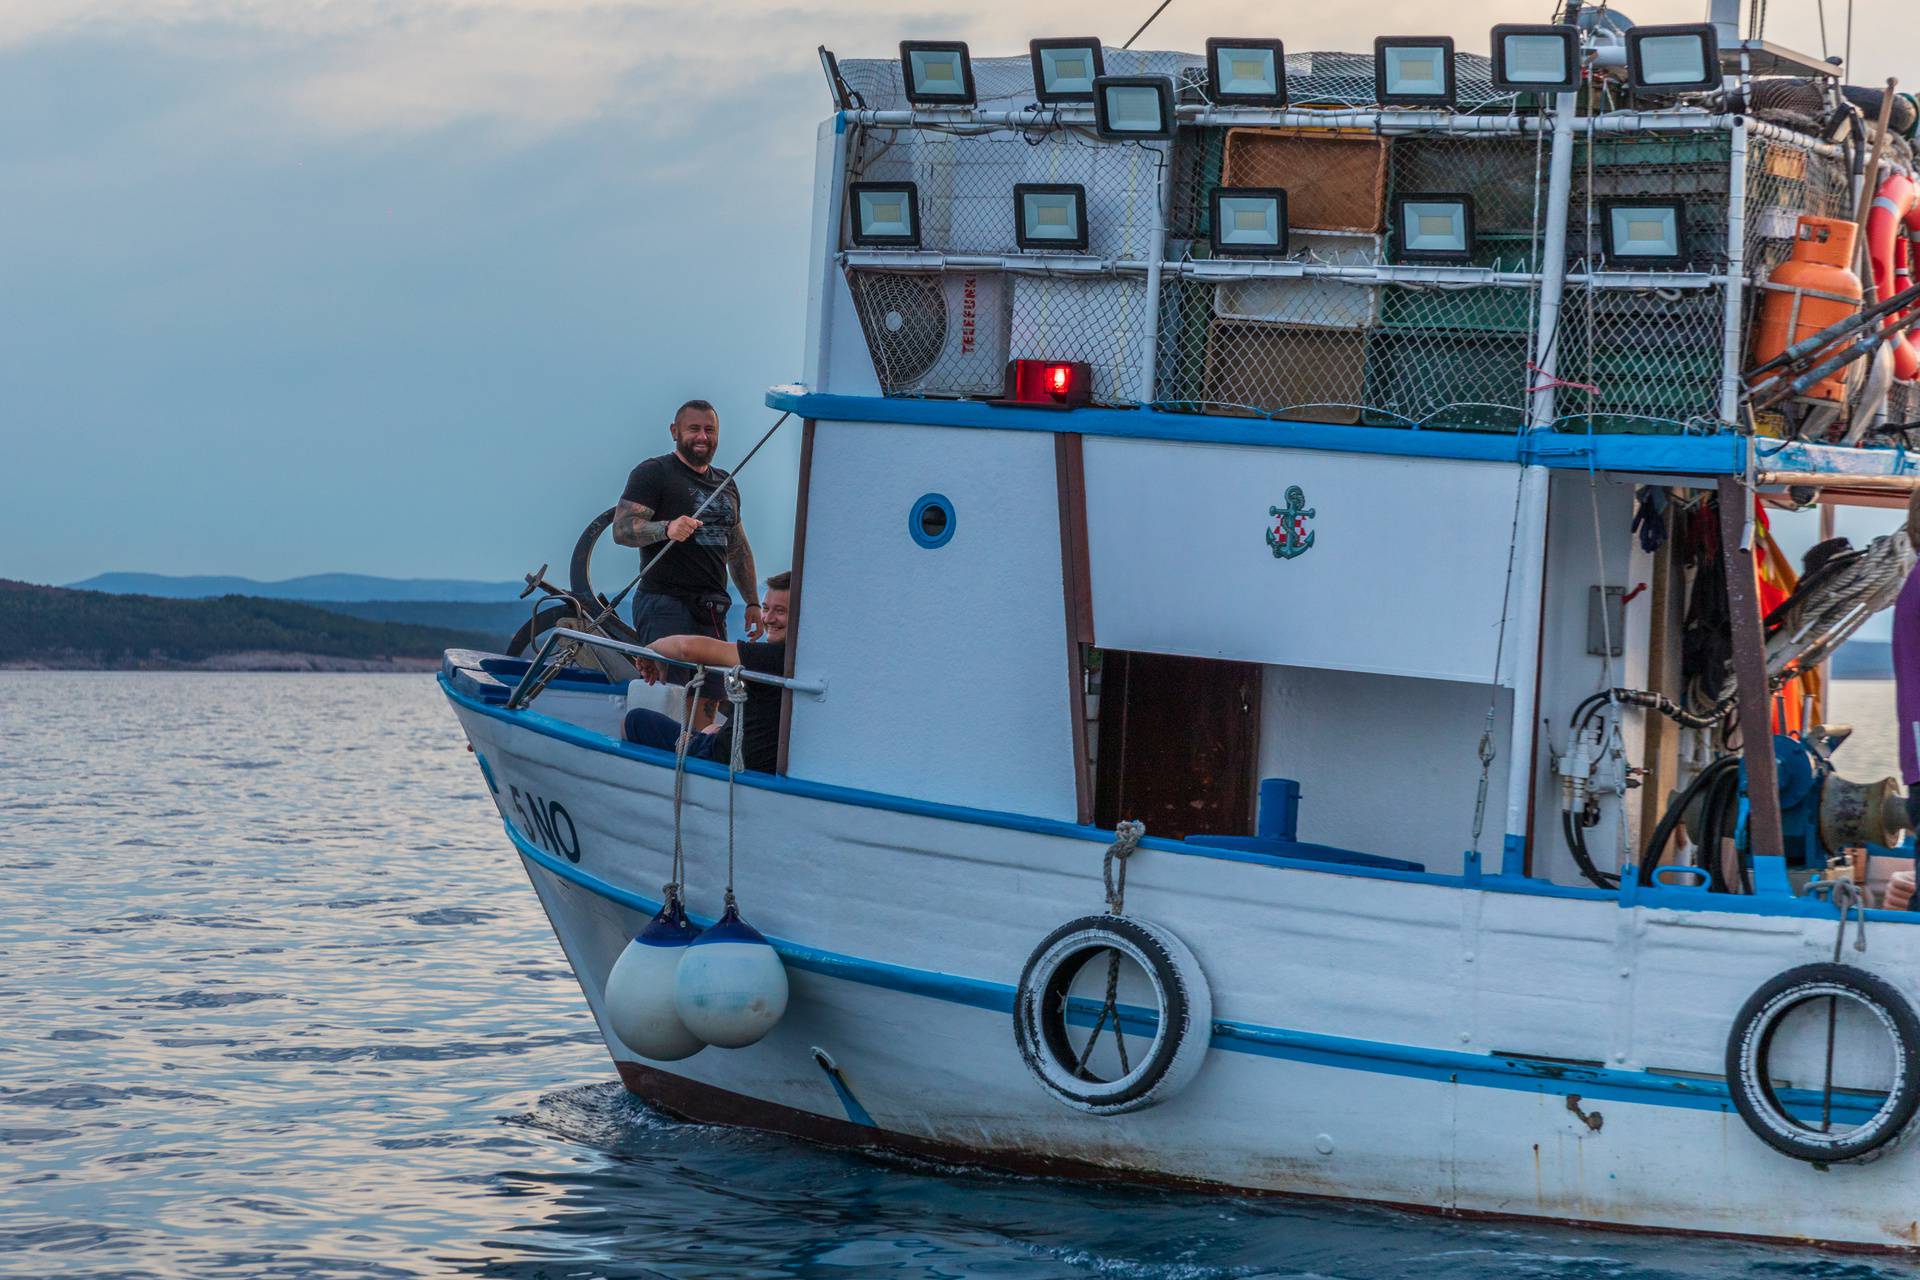 Ne propustite 26.08. besplatnu panoramsku vožnju brodom crikveničkim akvatorijem